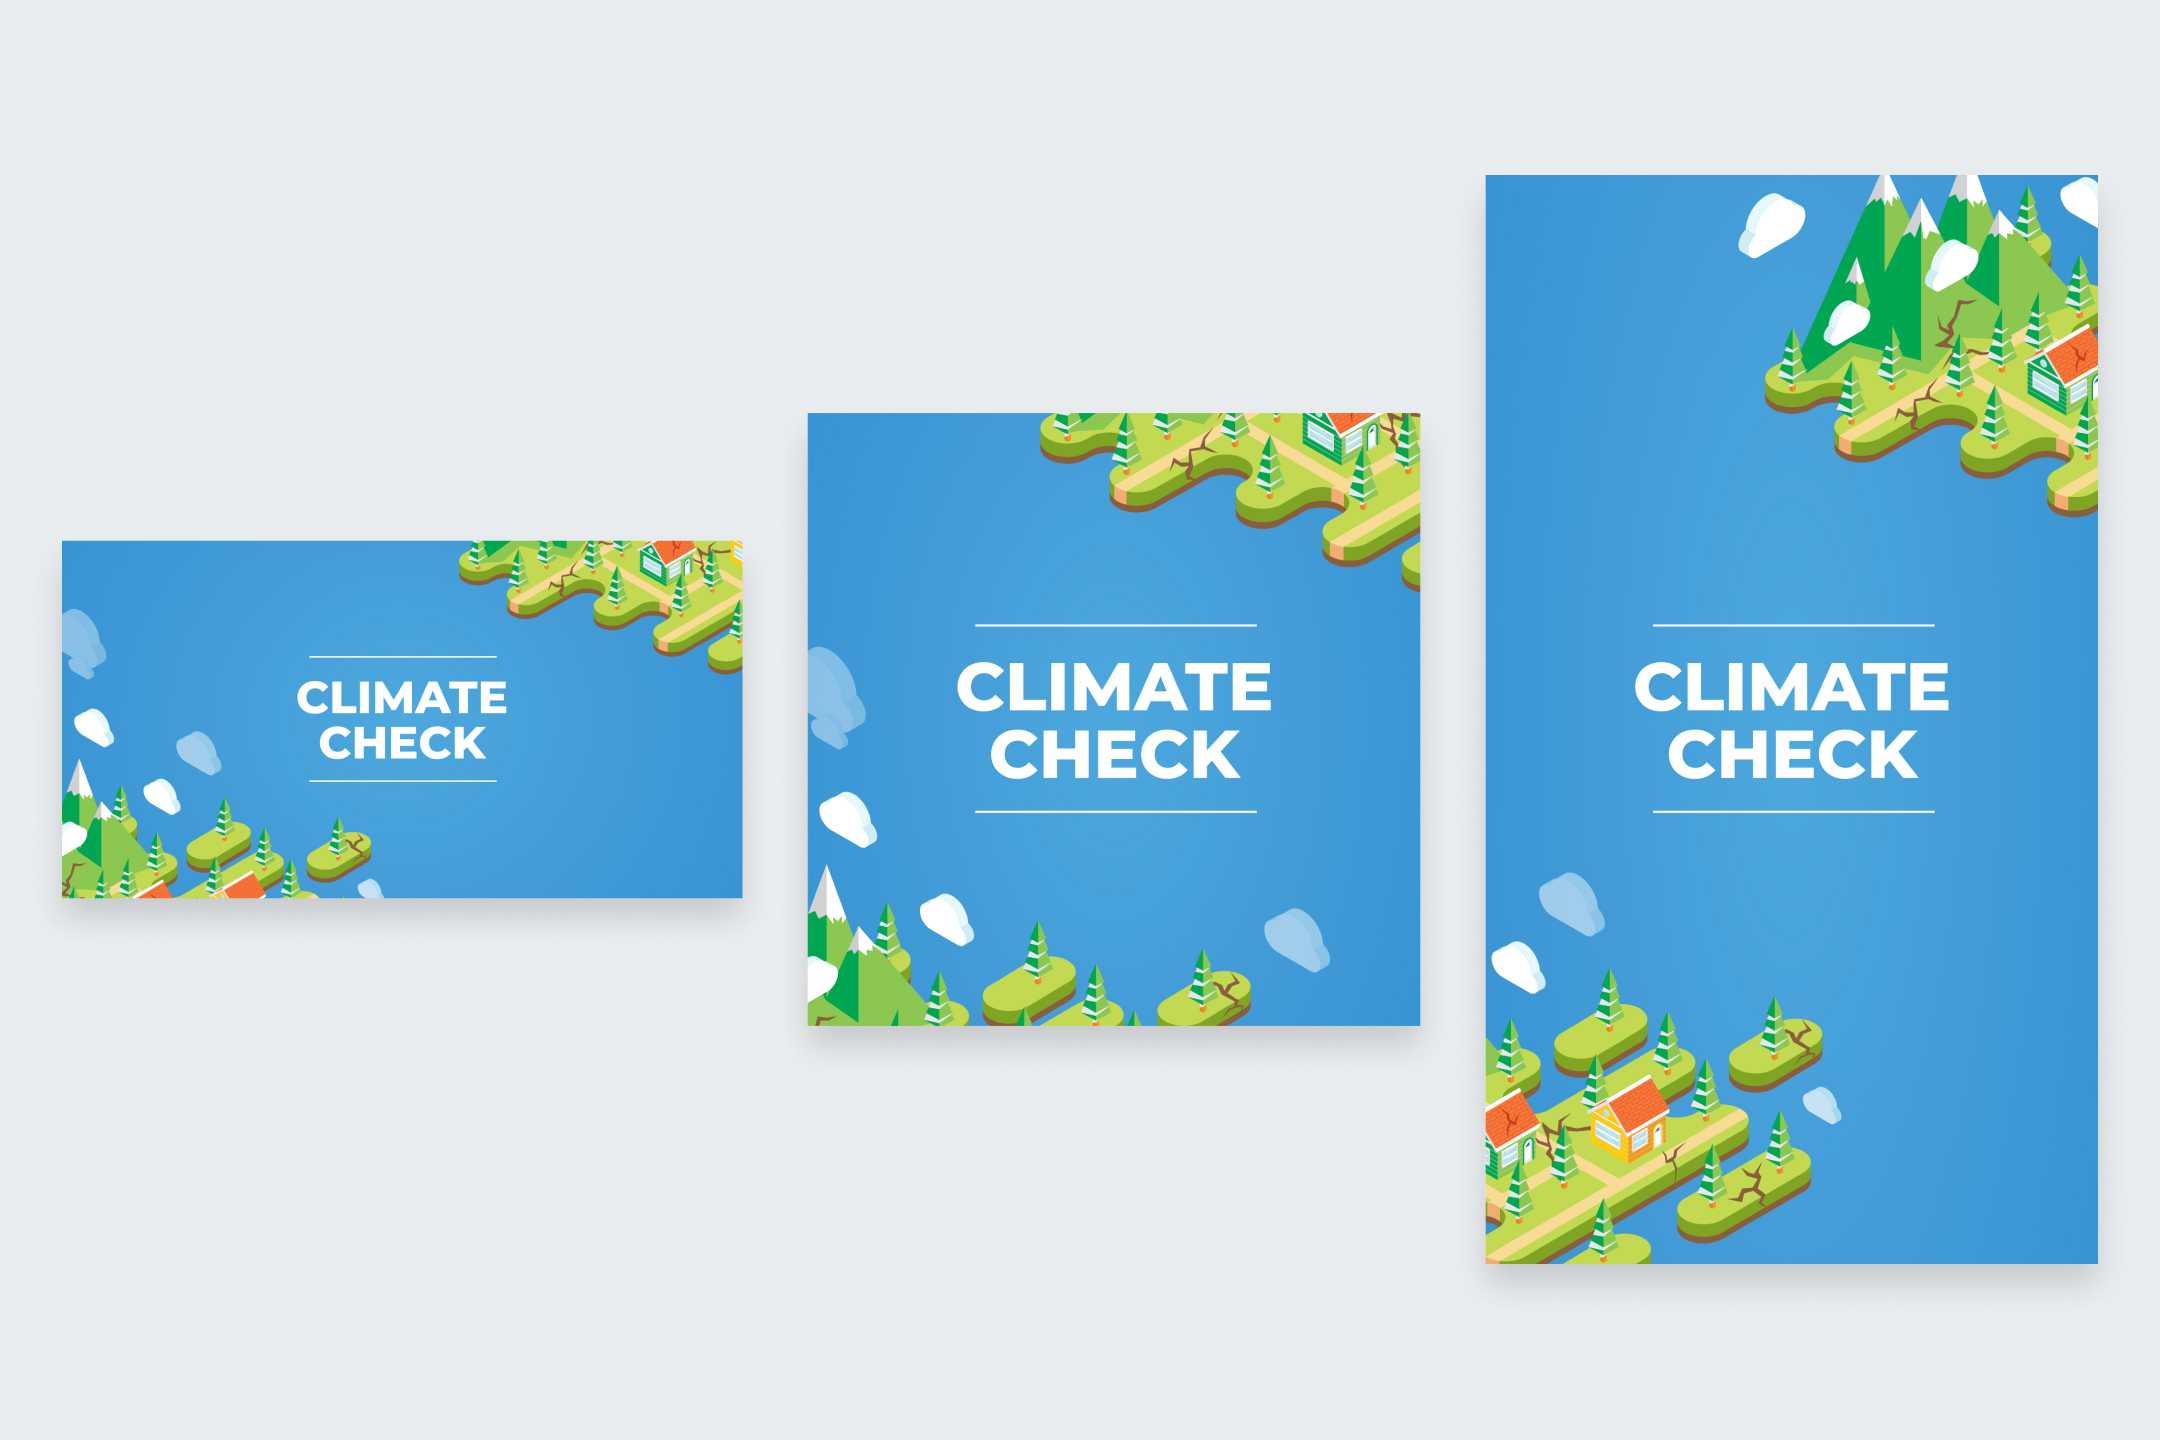 Climatecheck logos